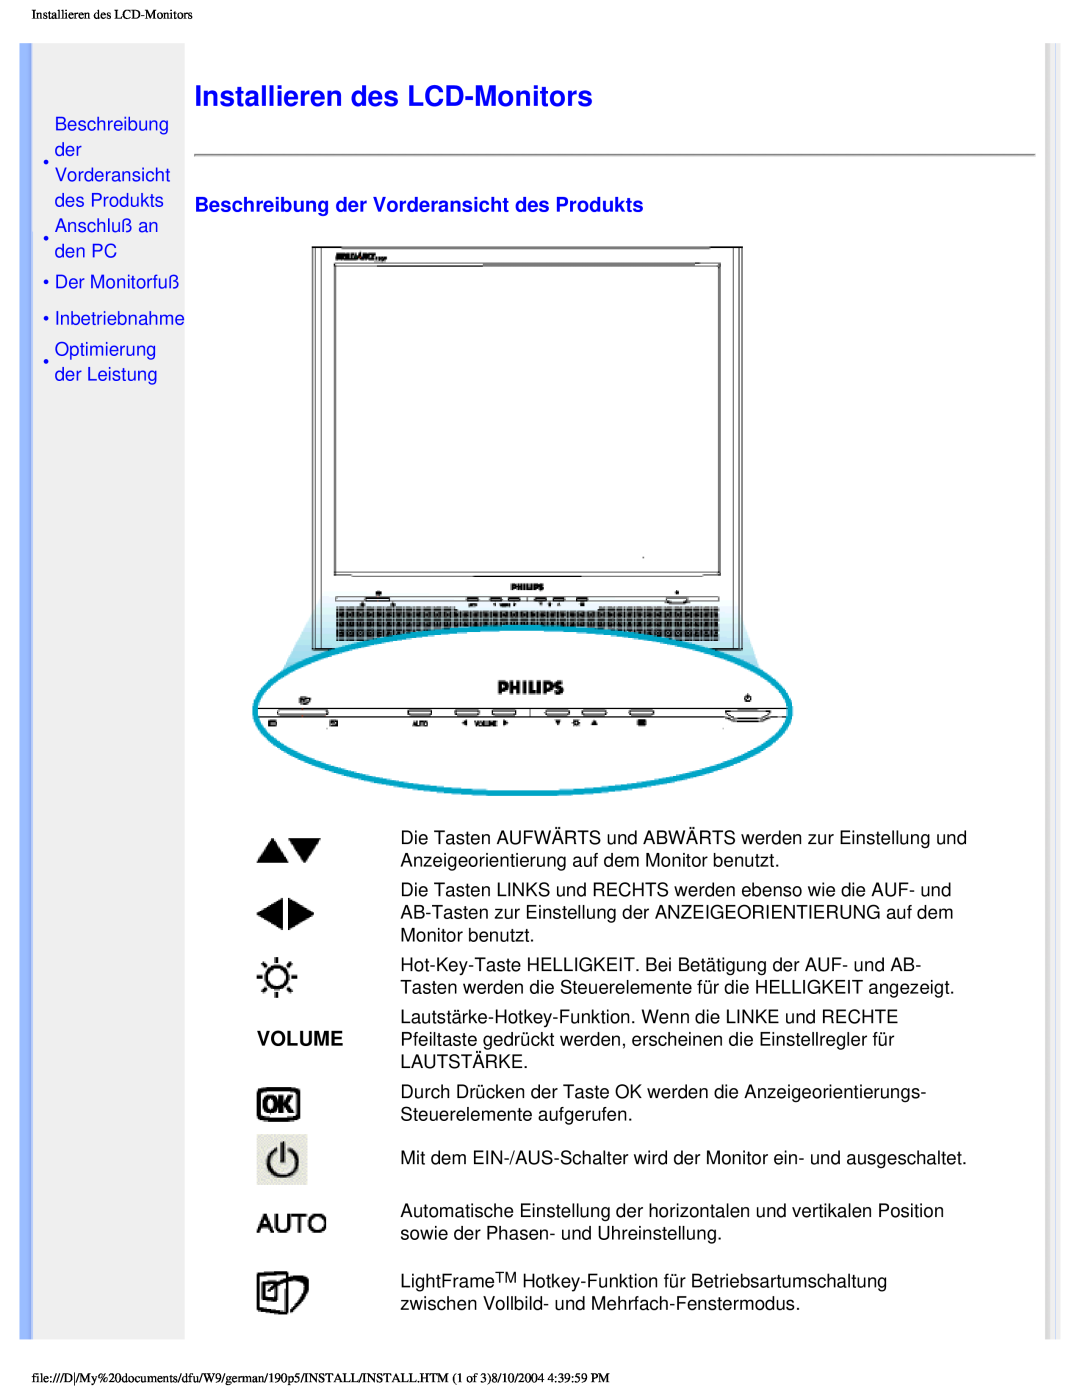 Philips 190P5 Installieren des LCD-Monitors, Beschreibung der Vorderansicht des Produkts, Optimierung der Leistung 